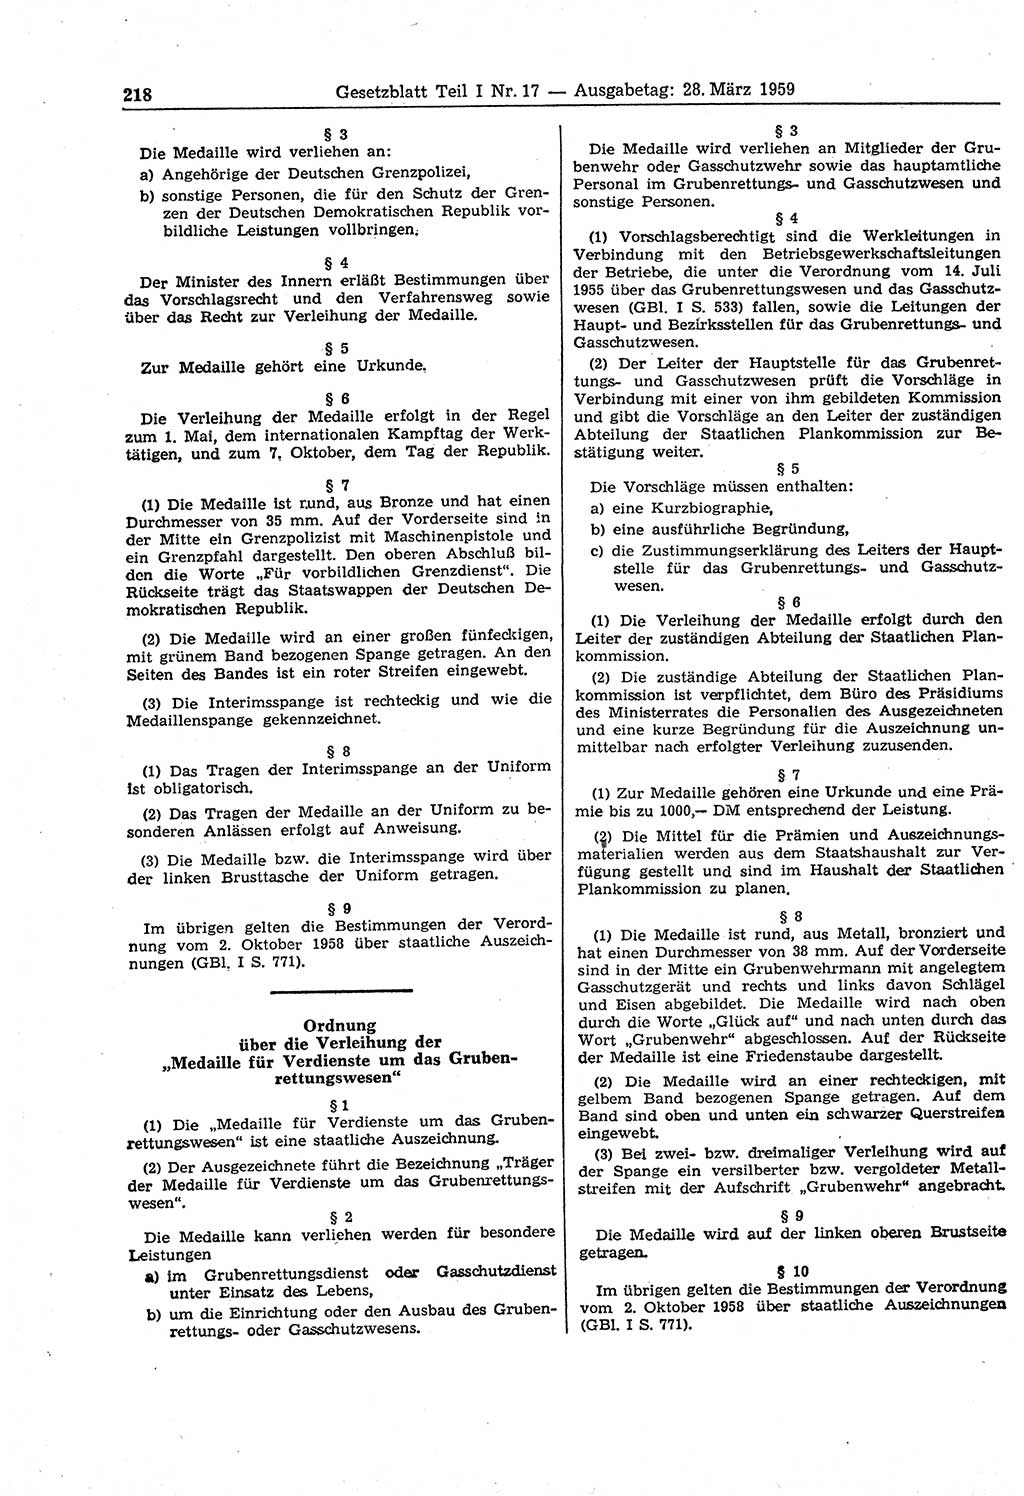 Gesetzblatt (GBl.) der Deutschen Demokratischen Republik (DDR) Teil Ⅰ 1959, Seite 218 (GBl. DDR Ⅰ 1959, S. 218)